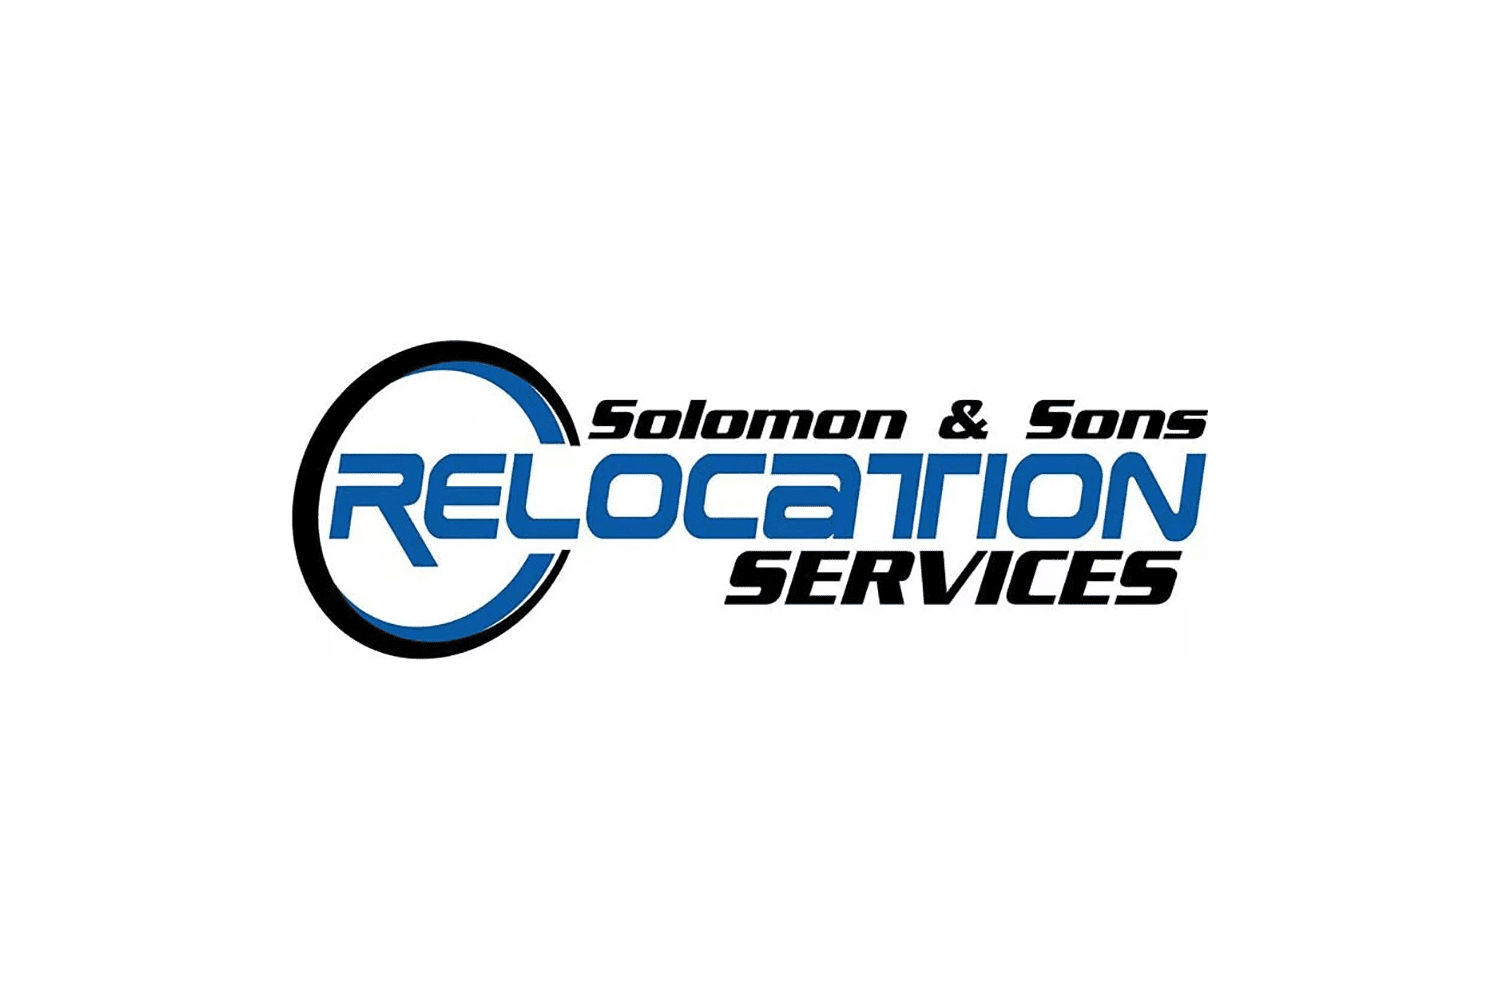 Logotipo da Solomon & Sons Relocation Services em letras azuis e pretas